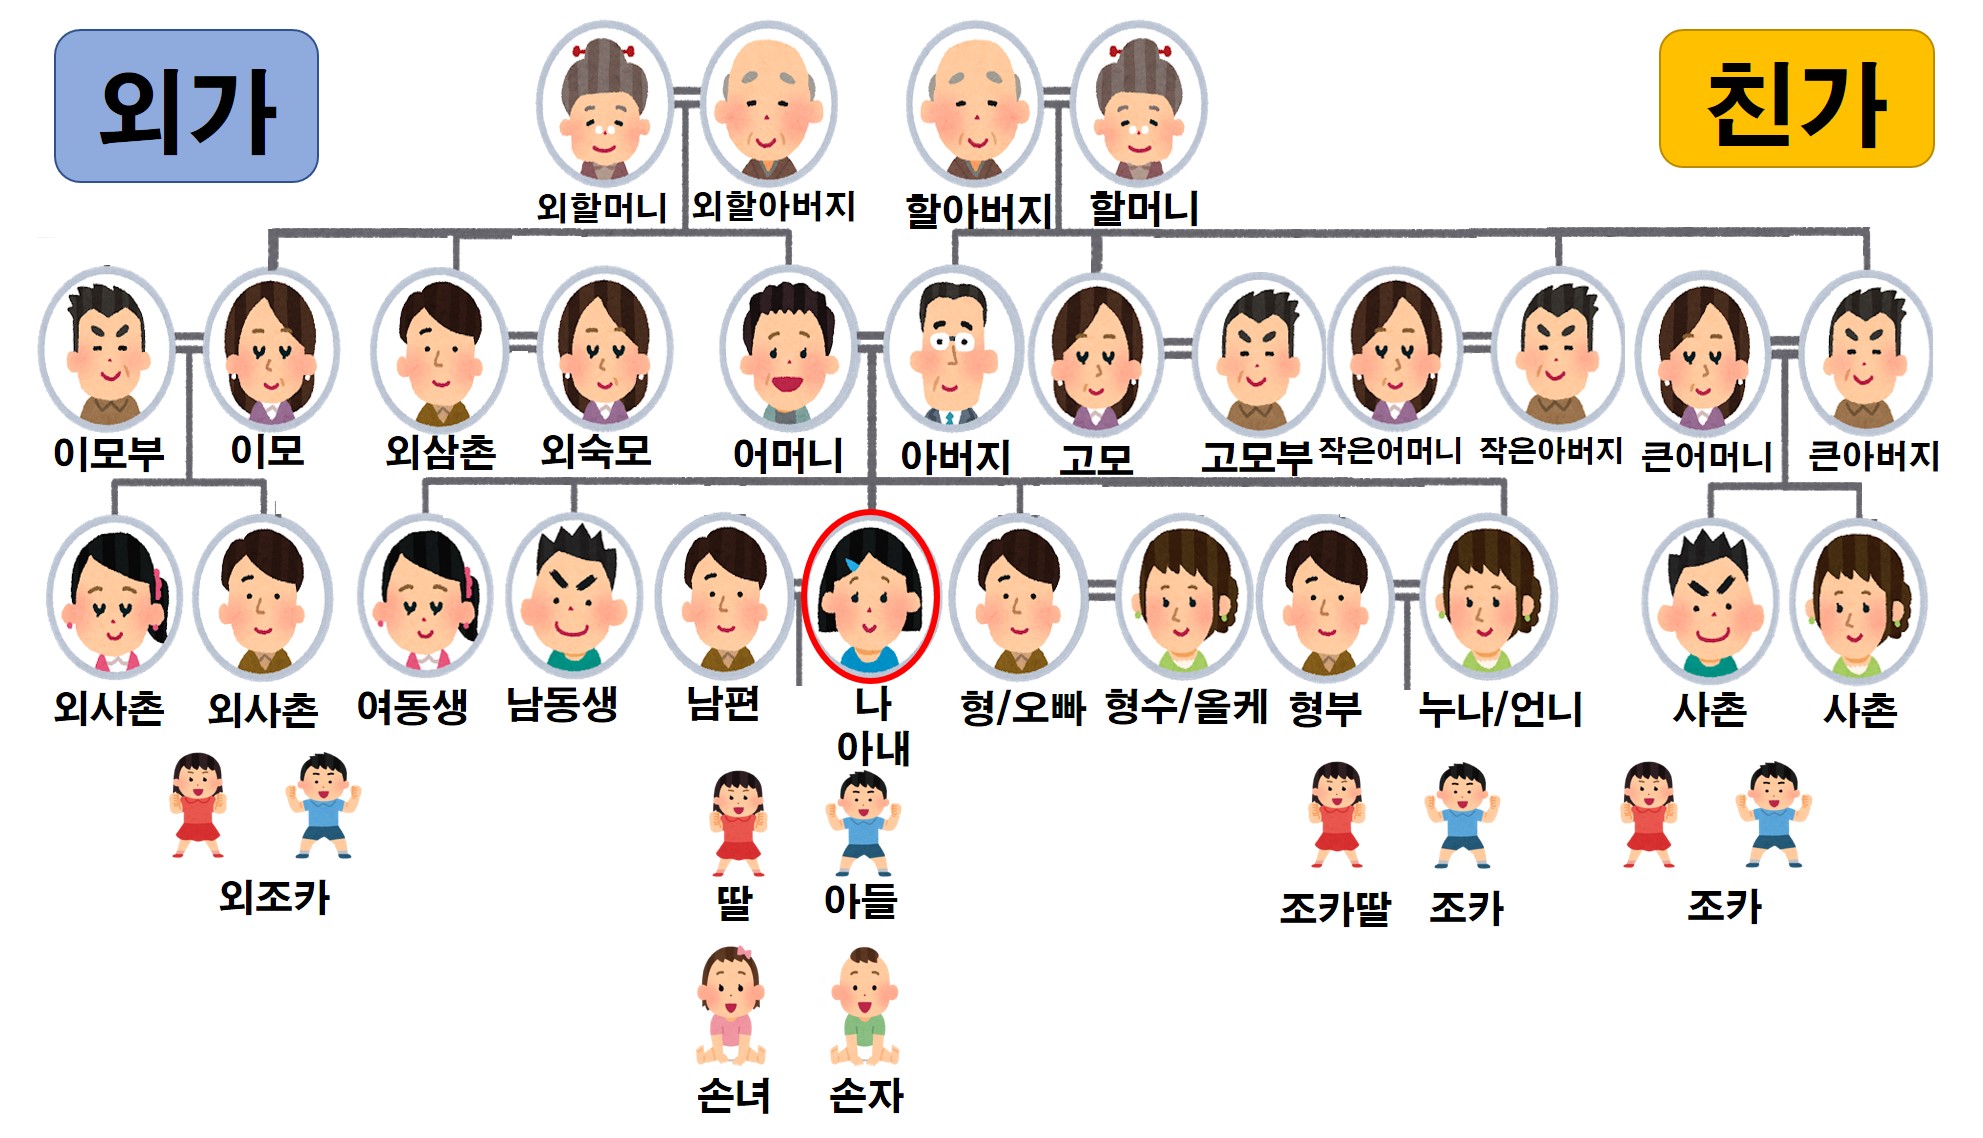 韓国の家族 親戚の呼び方一覧 家系図で詳しく解説 トリリンガル